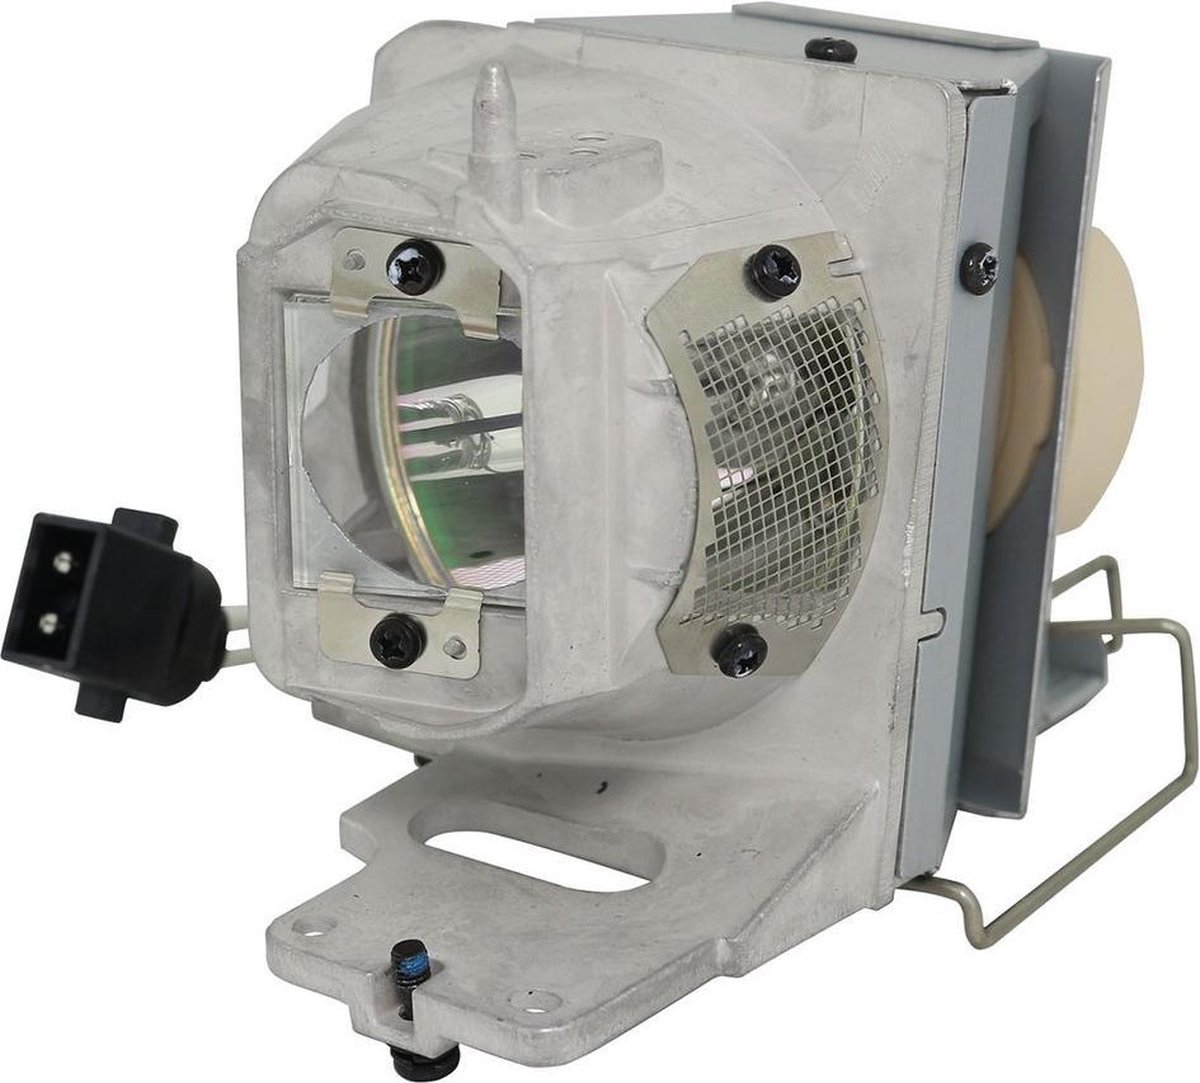 Beamerlamp geschikt voor de OPTOMA UHD65 beamer, lamp code BL-FP240E / SP.78V01GC01. Bevat originele UHP lamp, prestaties gelijk aan origineel.